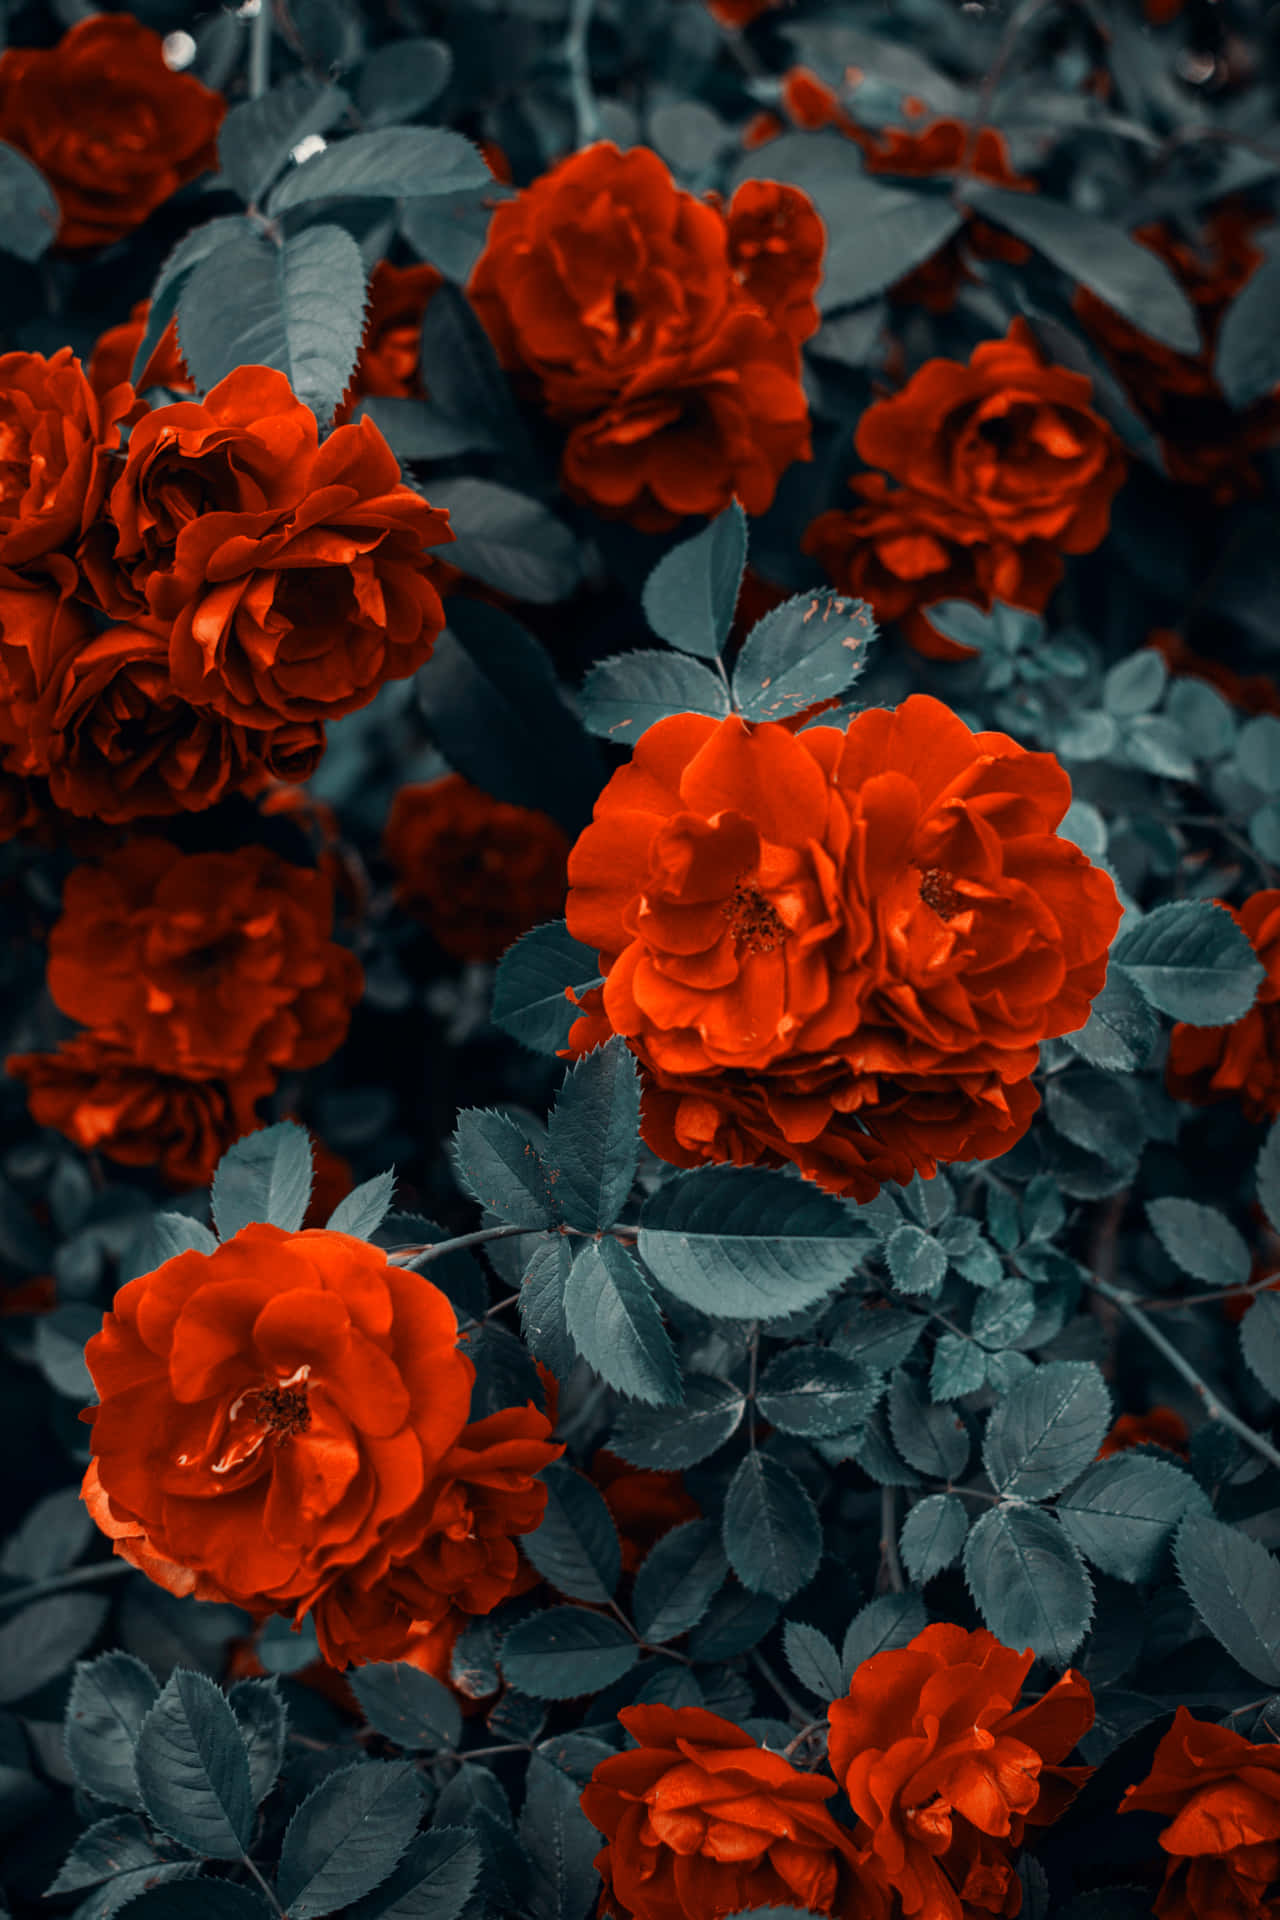 Imagemlinda De Rosas Vermelhas.